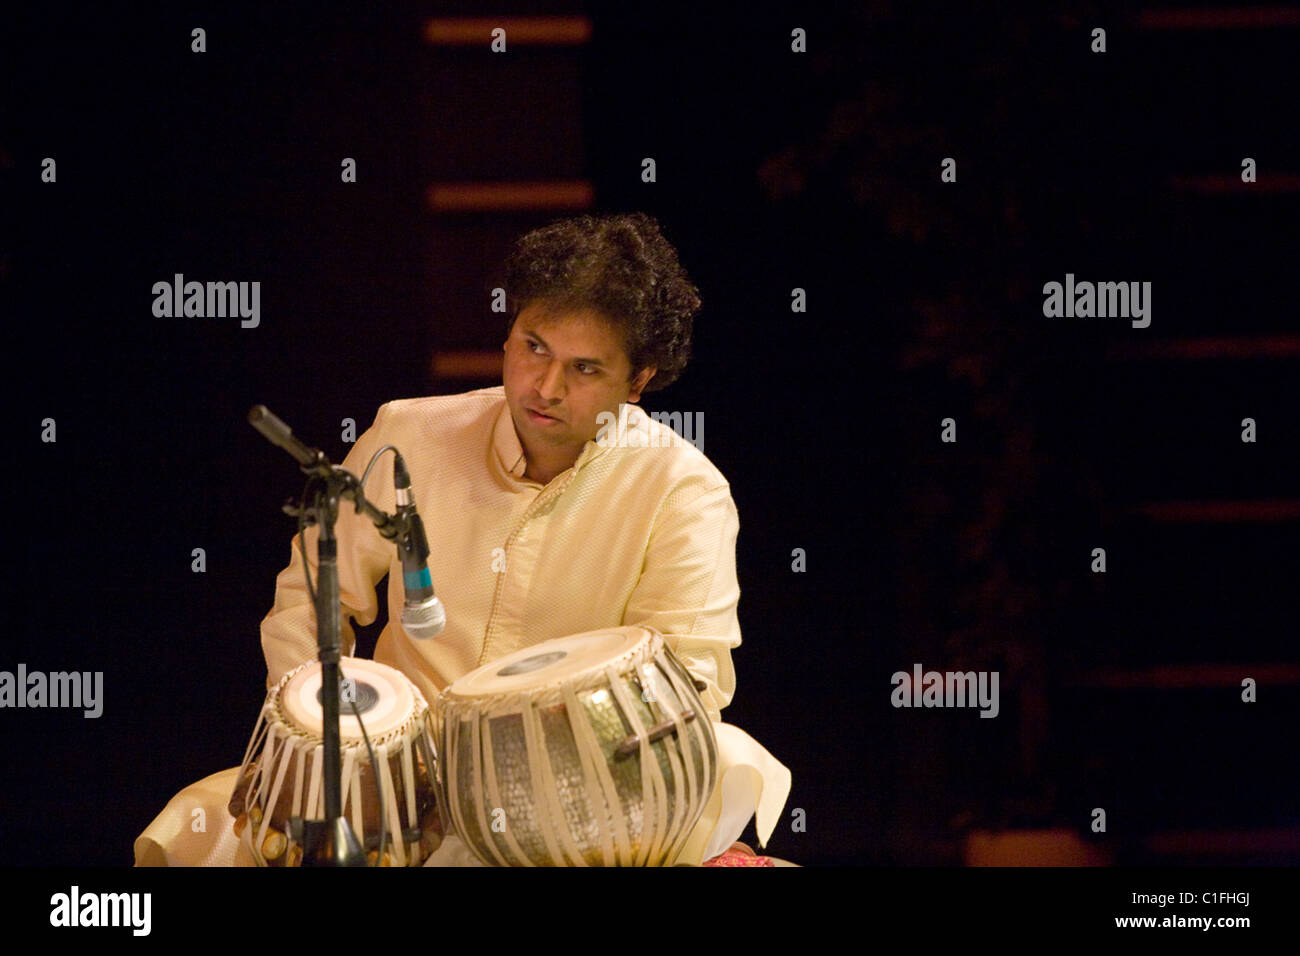 Joueur de tabla indien lors d'un concert. Banque D'Images